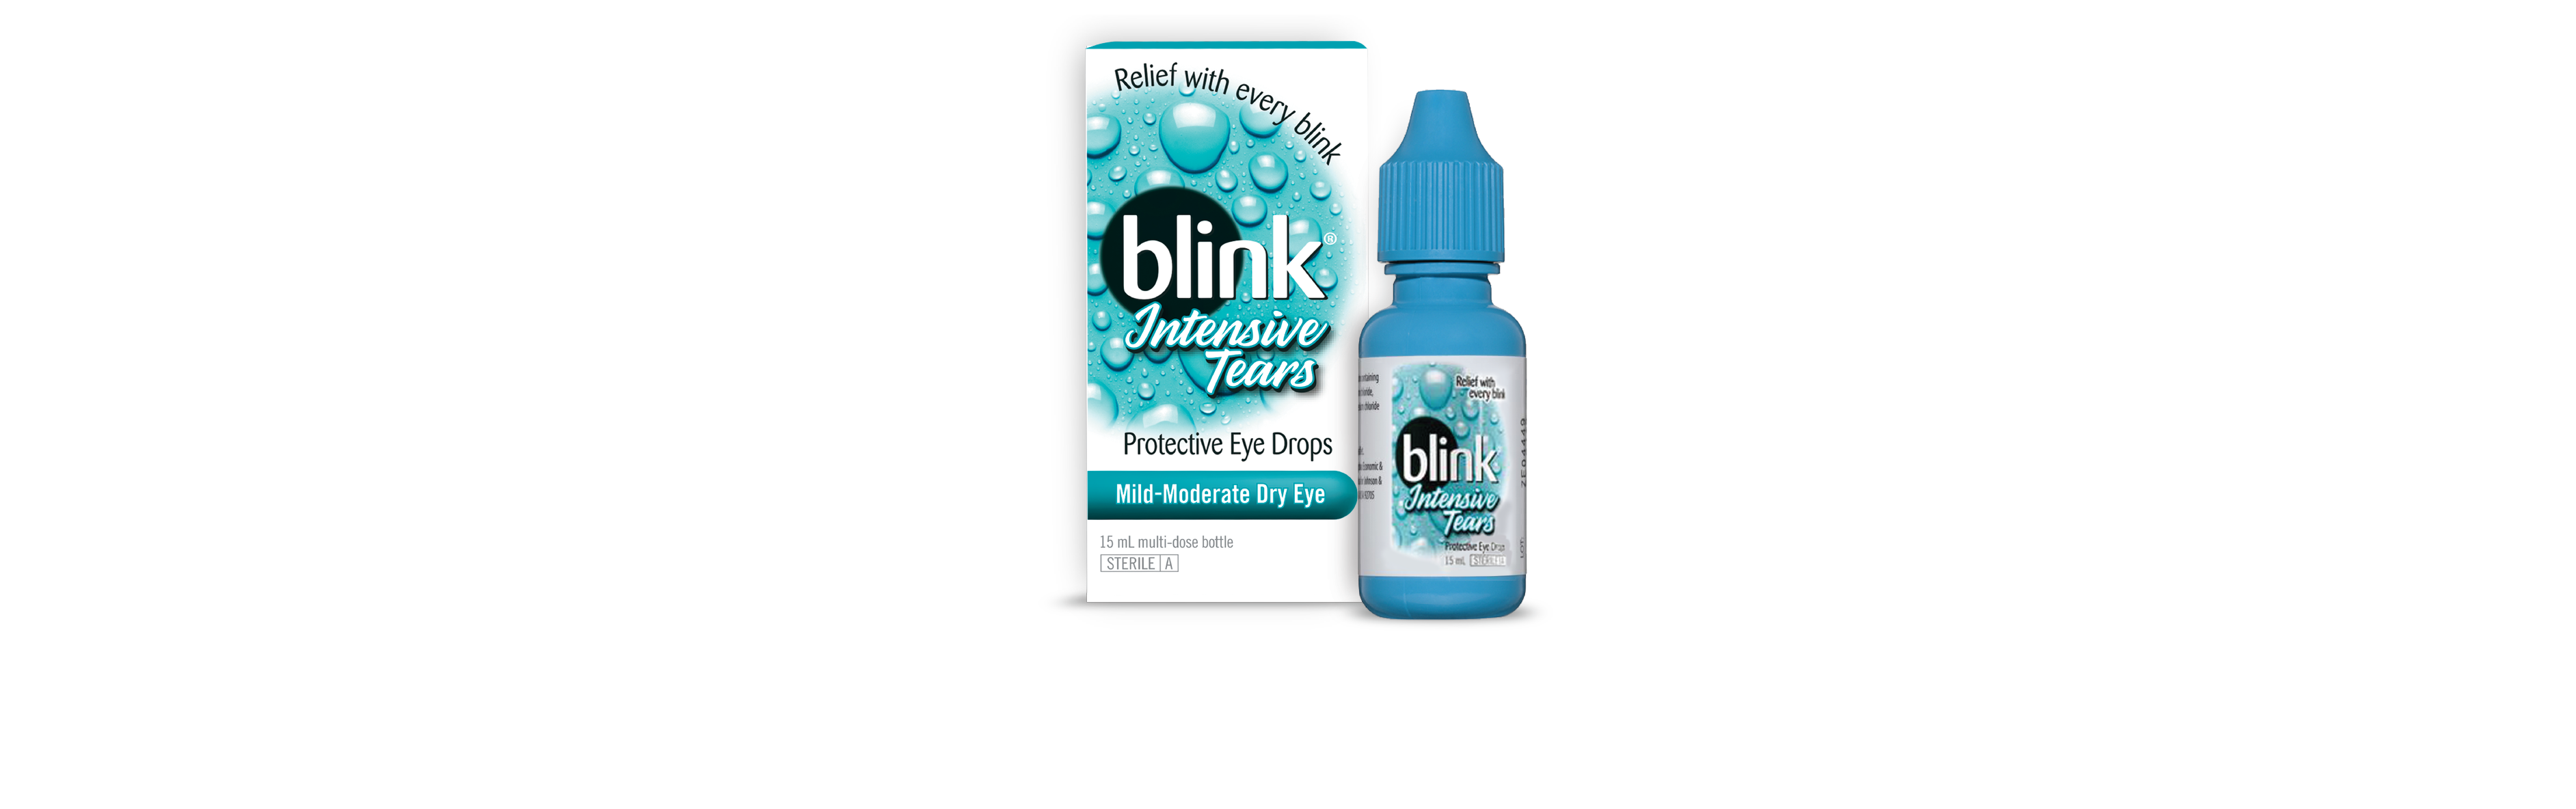 BLINK INTENSIVE TEARS DROPS